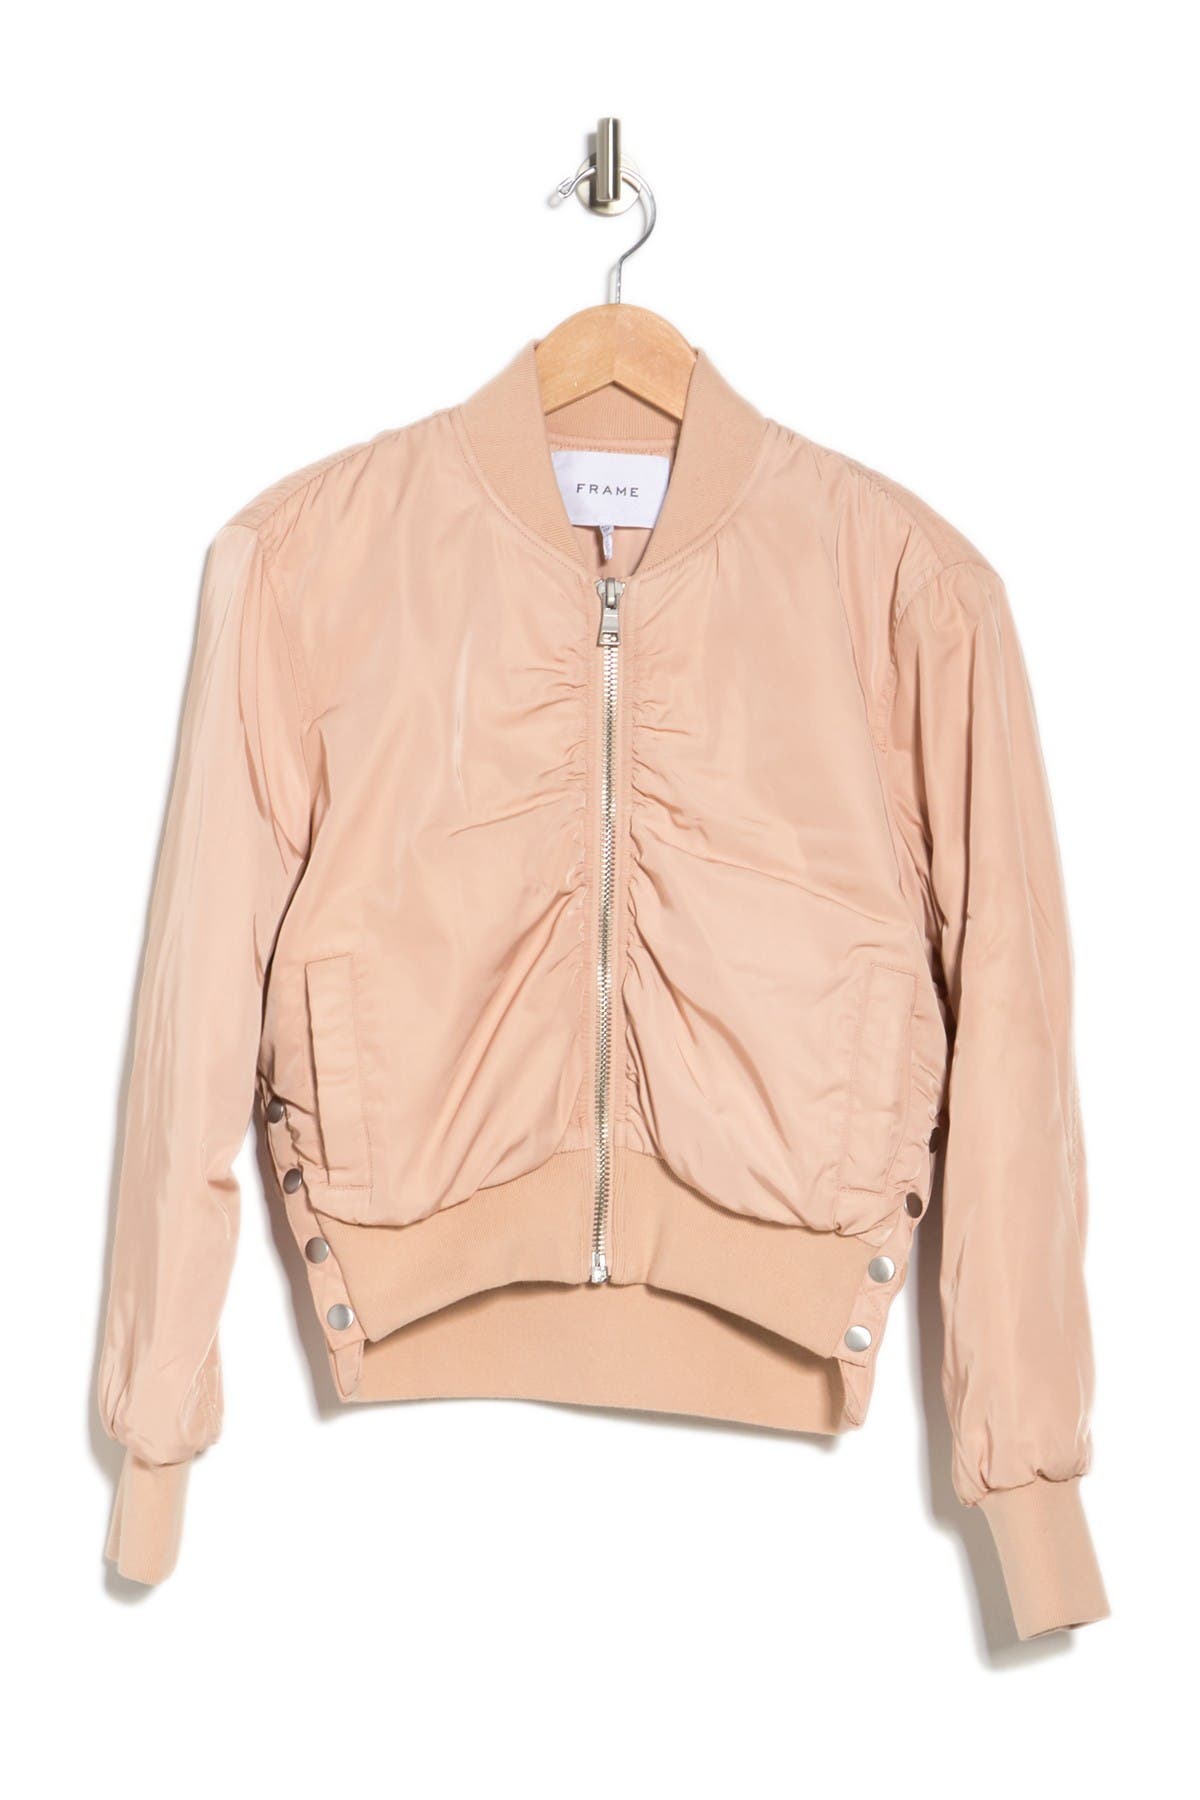 FRAME | Shirred Button Up Bomber Jacket 